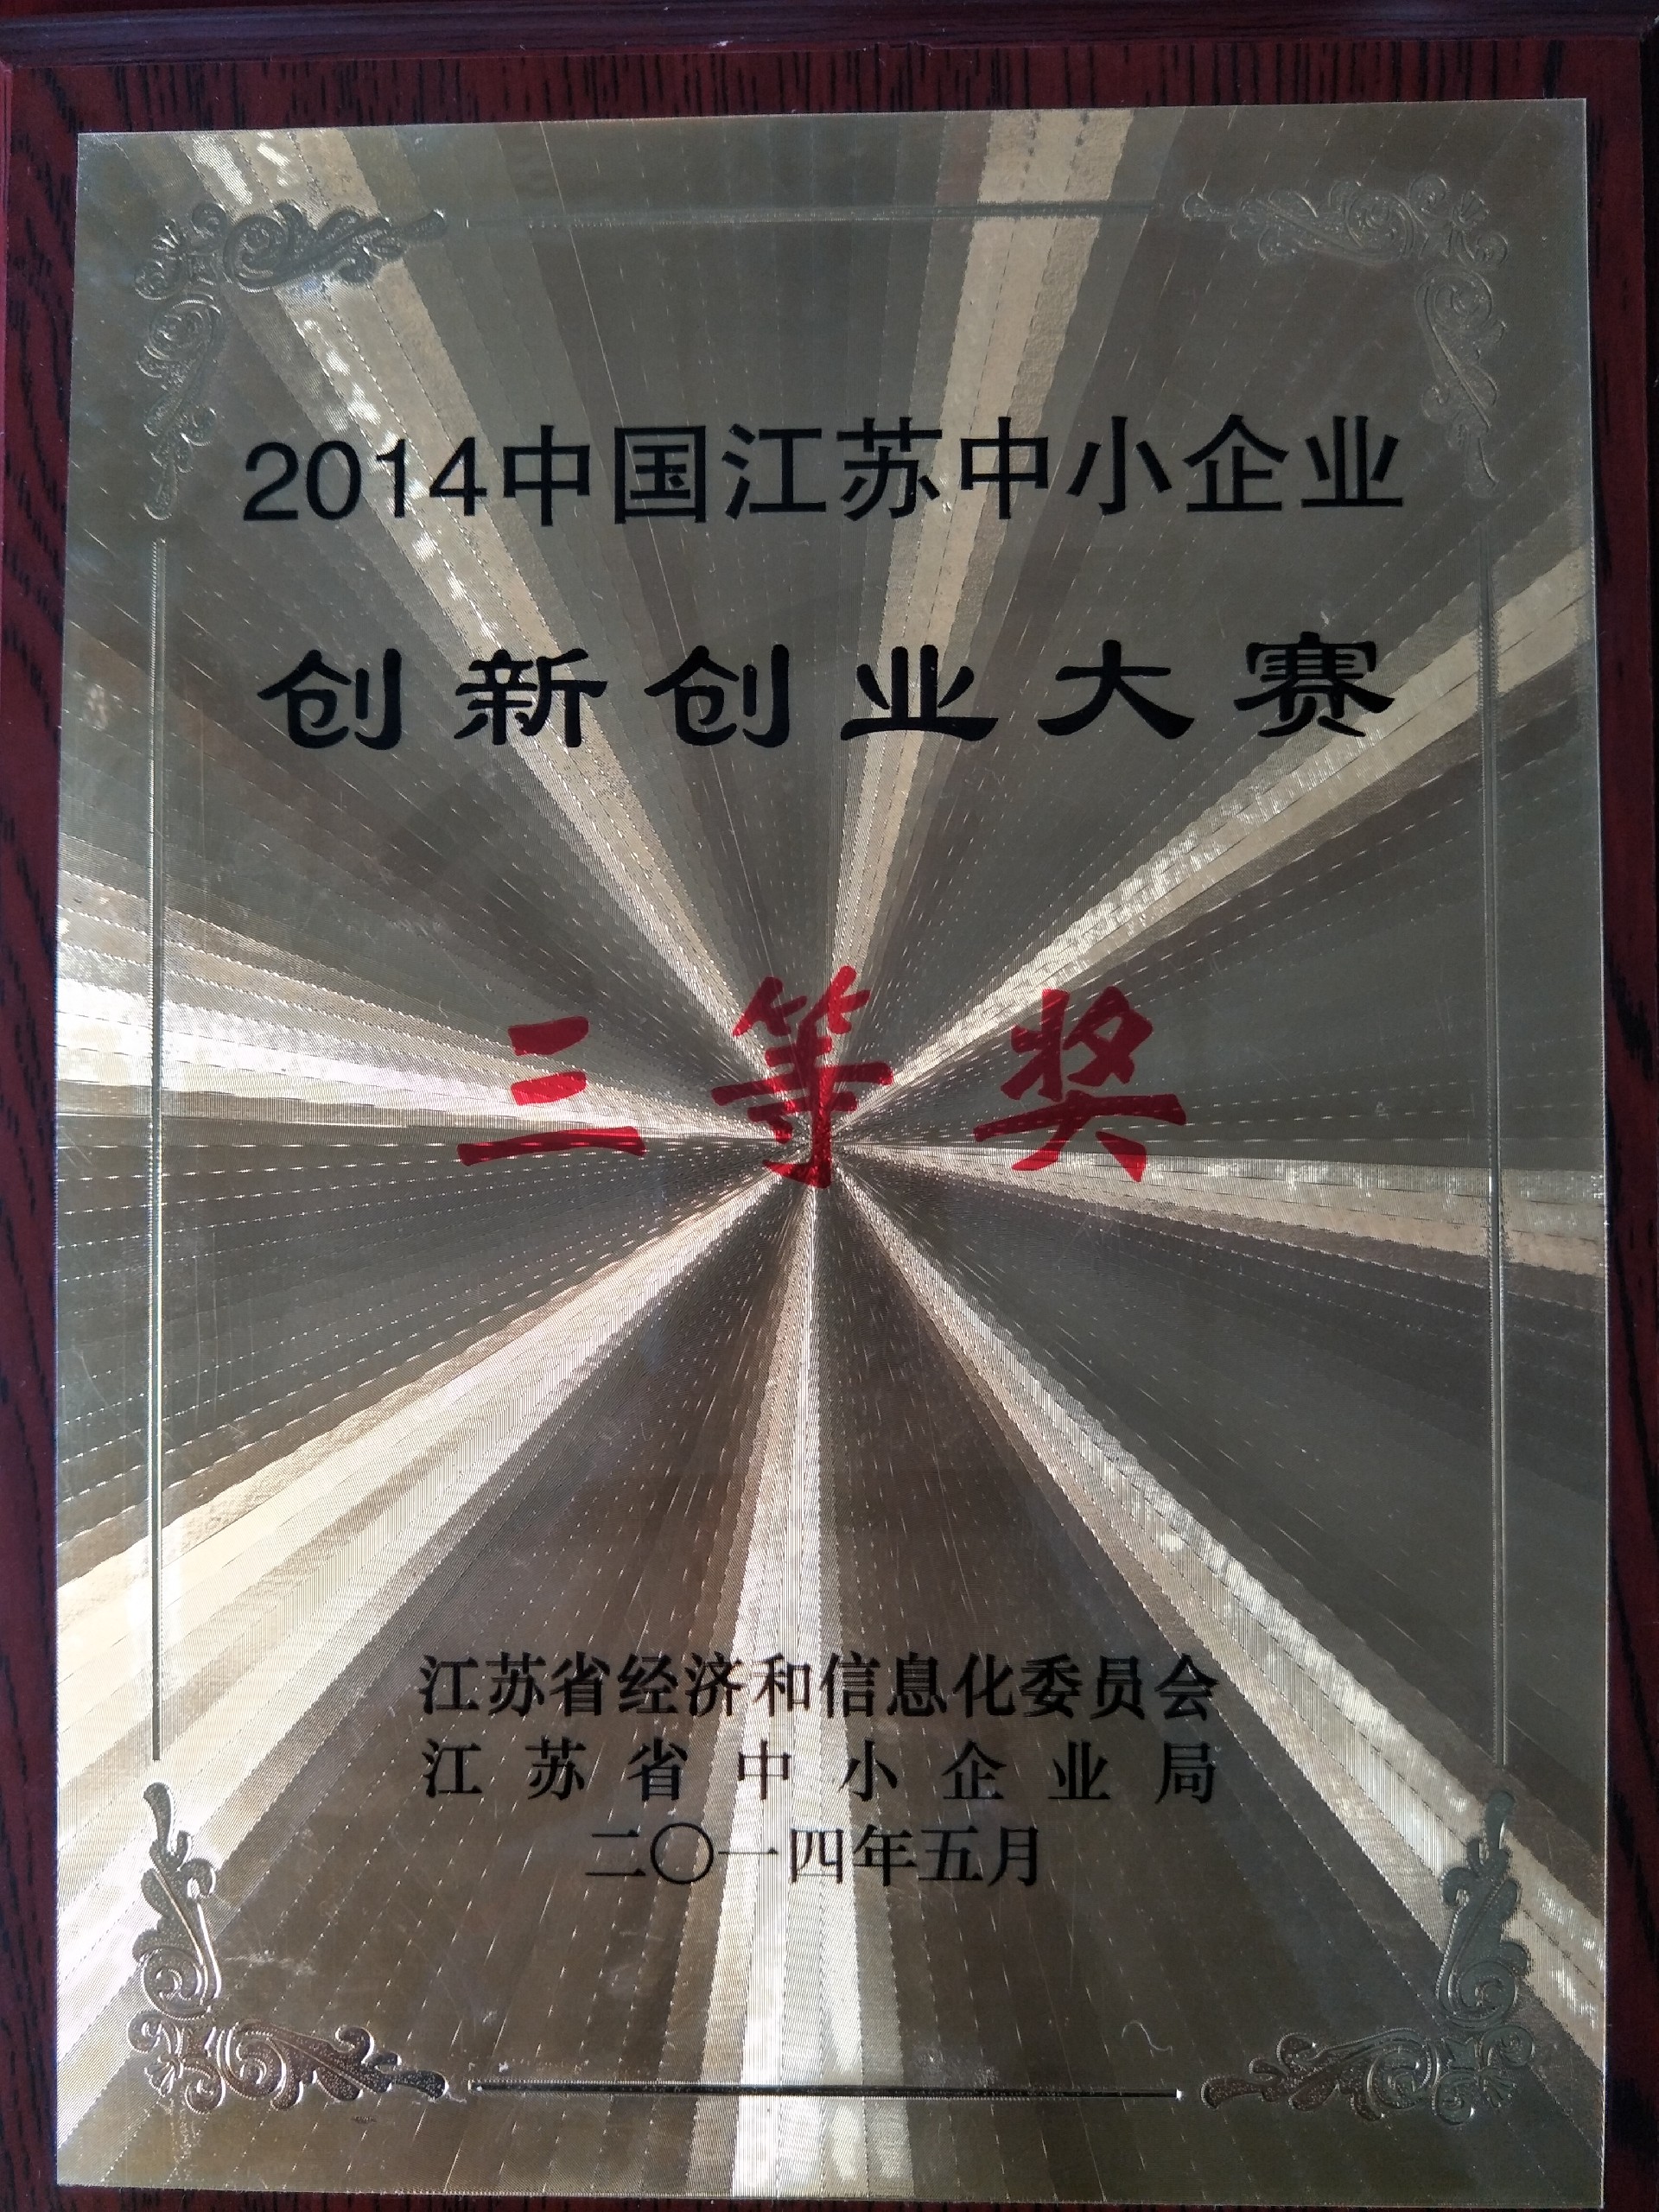 祝贺我公司在“2014中国江苏中小企业创新创业大赛”荣获三等奖